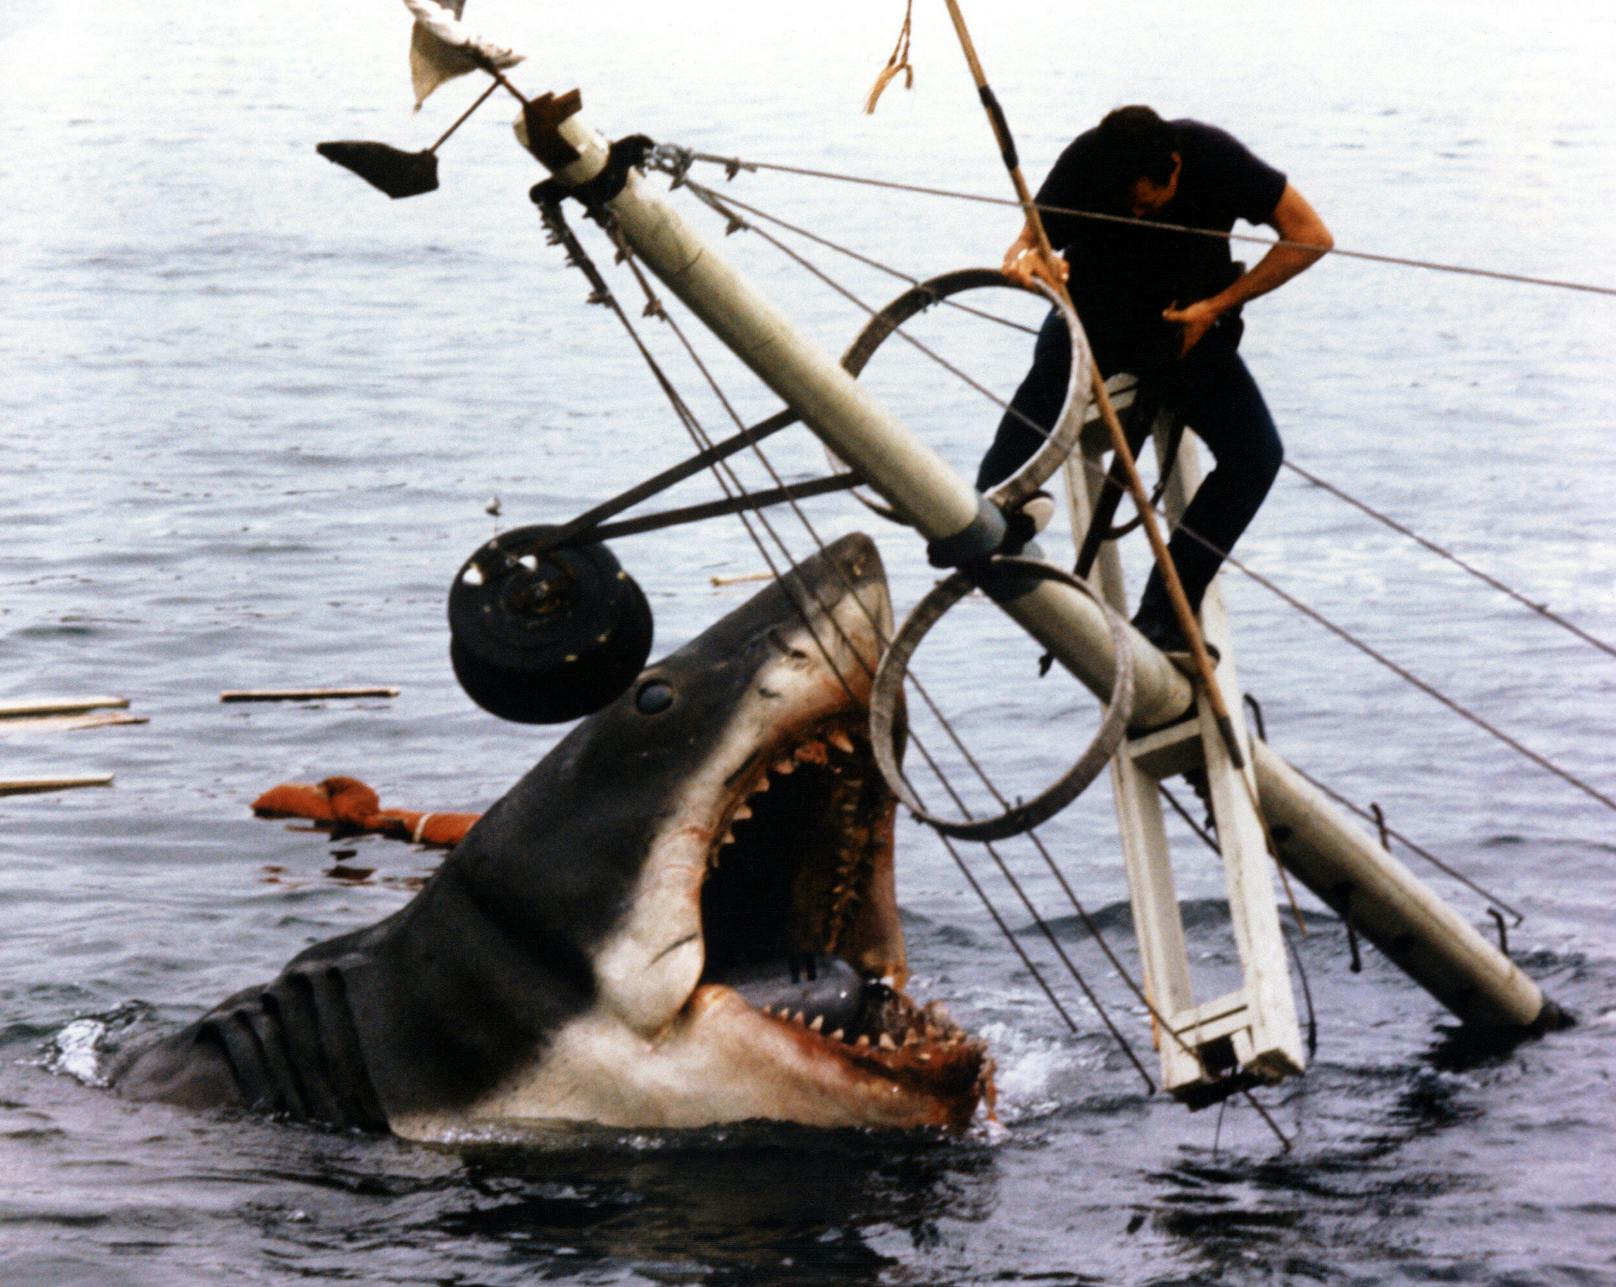 <strong>DER WEISSE HAI (USA 1975, Regie: Steven Spielberg)</strong>: Der Sommerblockbuster schlechthin, der auch 45 Jahre nach seiner Premiere jeden Badeurlaub unbequem macht. Der Klassiker rund um einen monströsen Hai, dem sich Sheriff Brody (Roy Scheider) mutig entgegen stellt, hat nichts von seinem Schrecken eingebüßt.<br><em>Verfügbar auf: Amazon (nicht im Prime-Abo enthalten)</em>